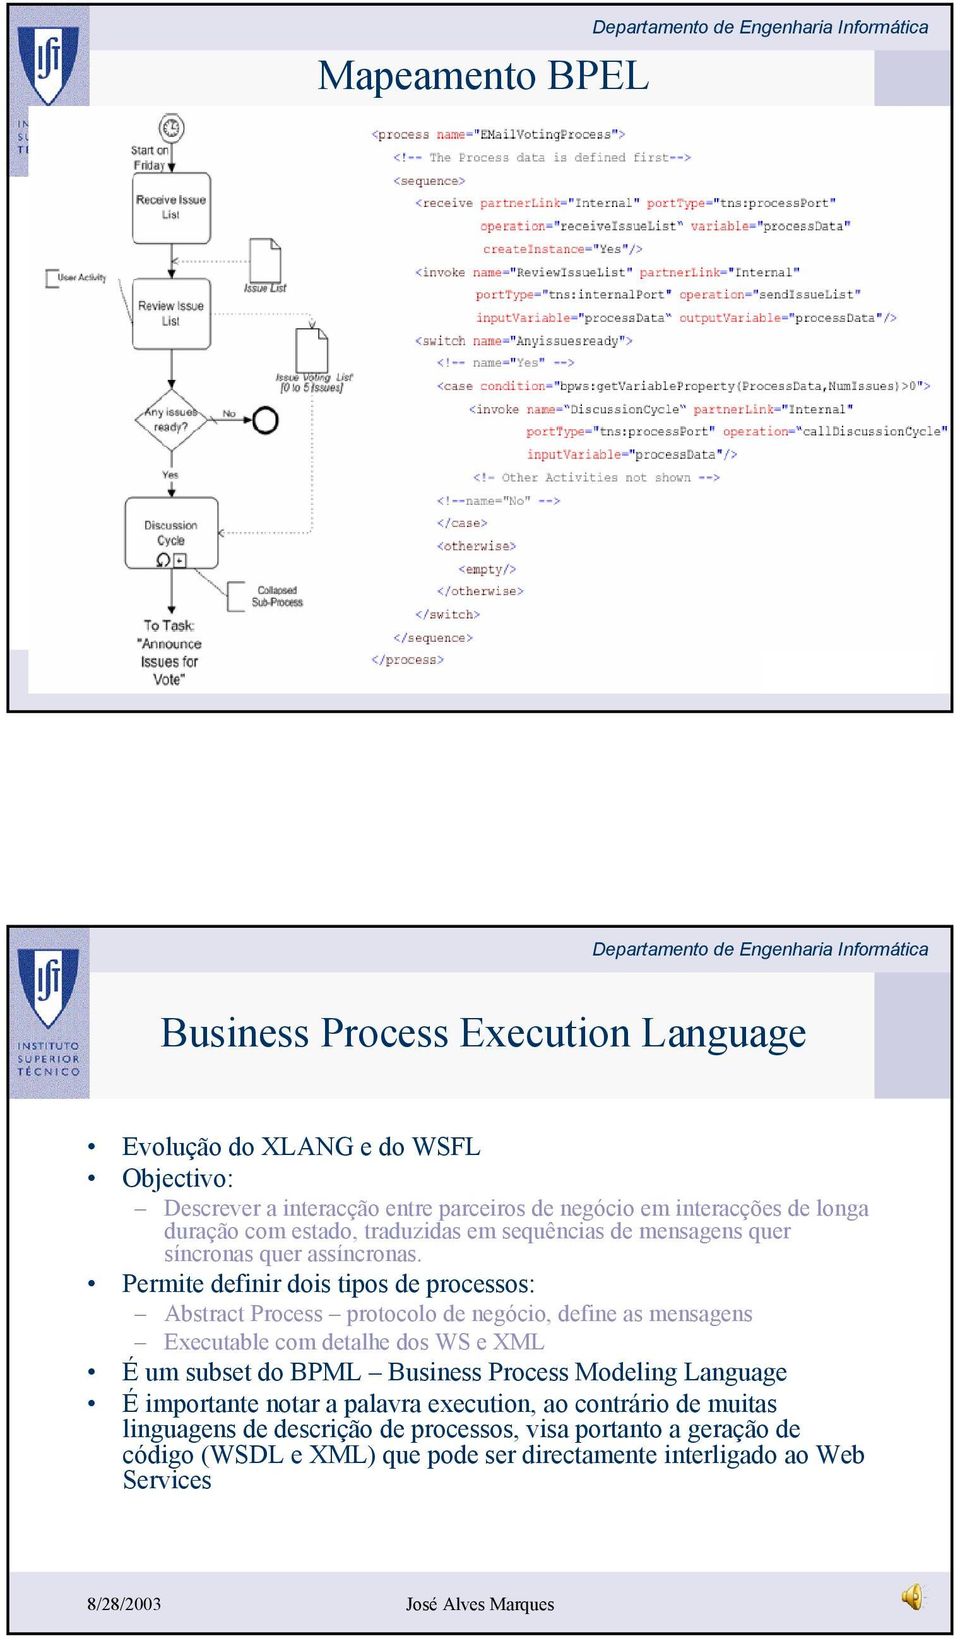 Permite definir dois tipos de processos: Abstract Process protocolo de negócio, define as mensagens Executable com detalhe dos WS e XML É um subset do BPML